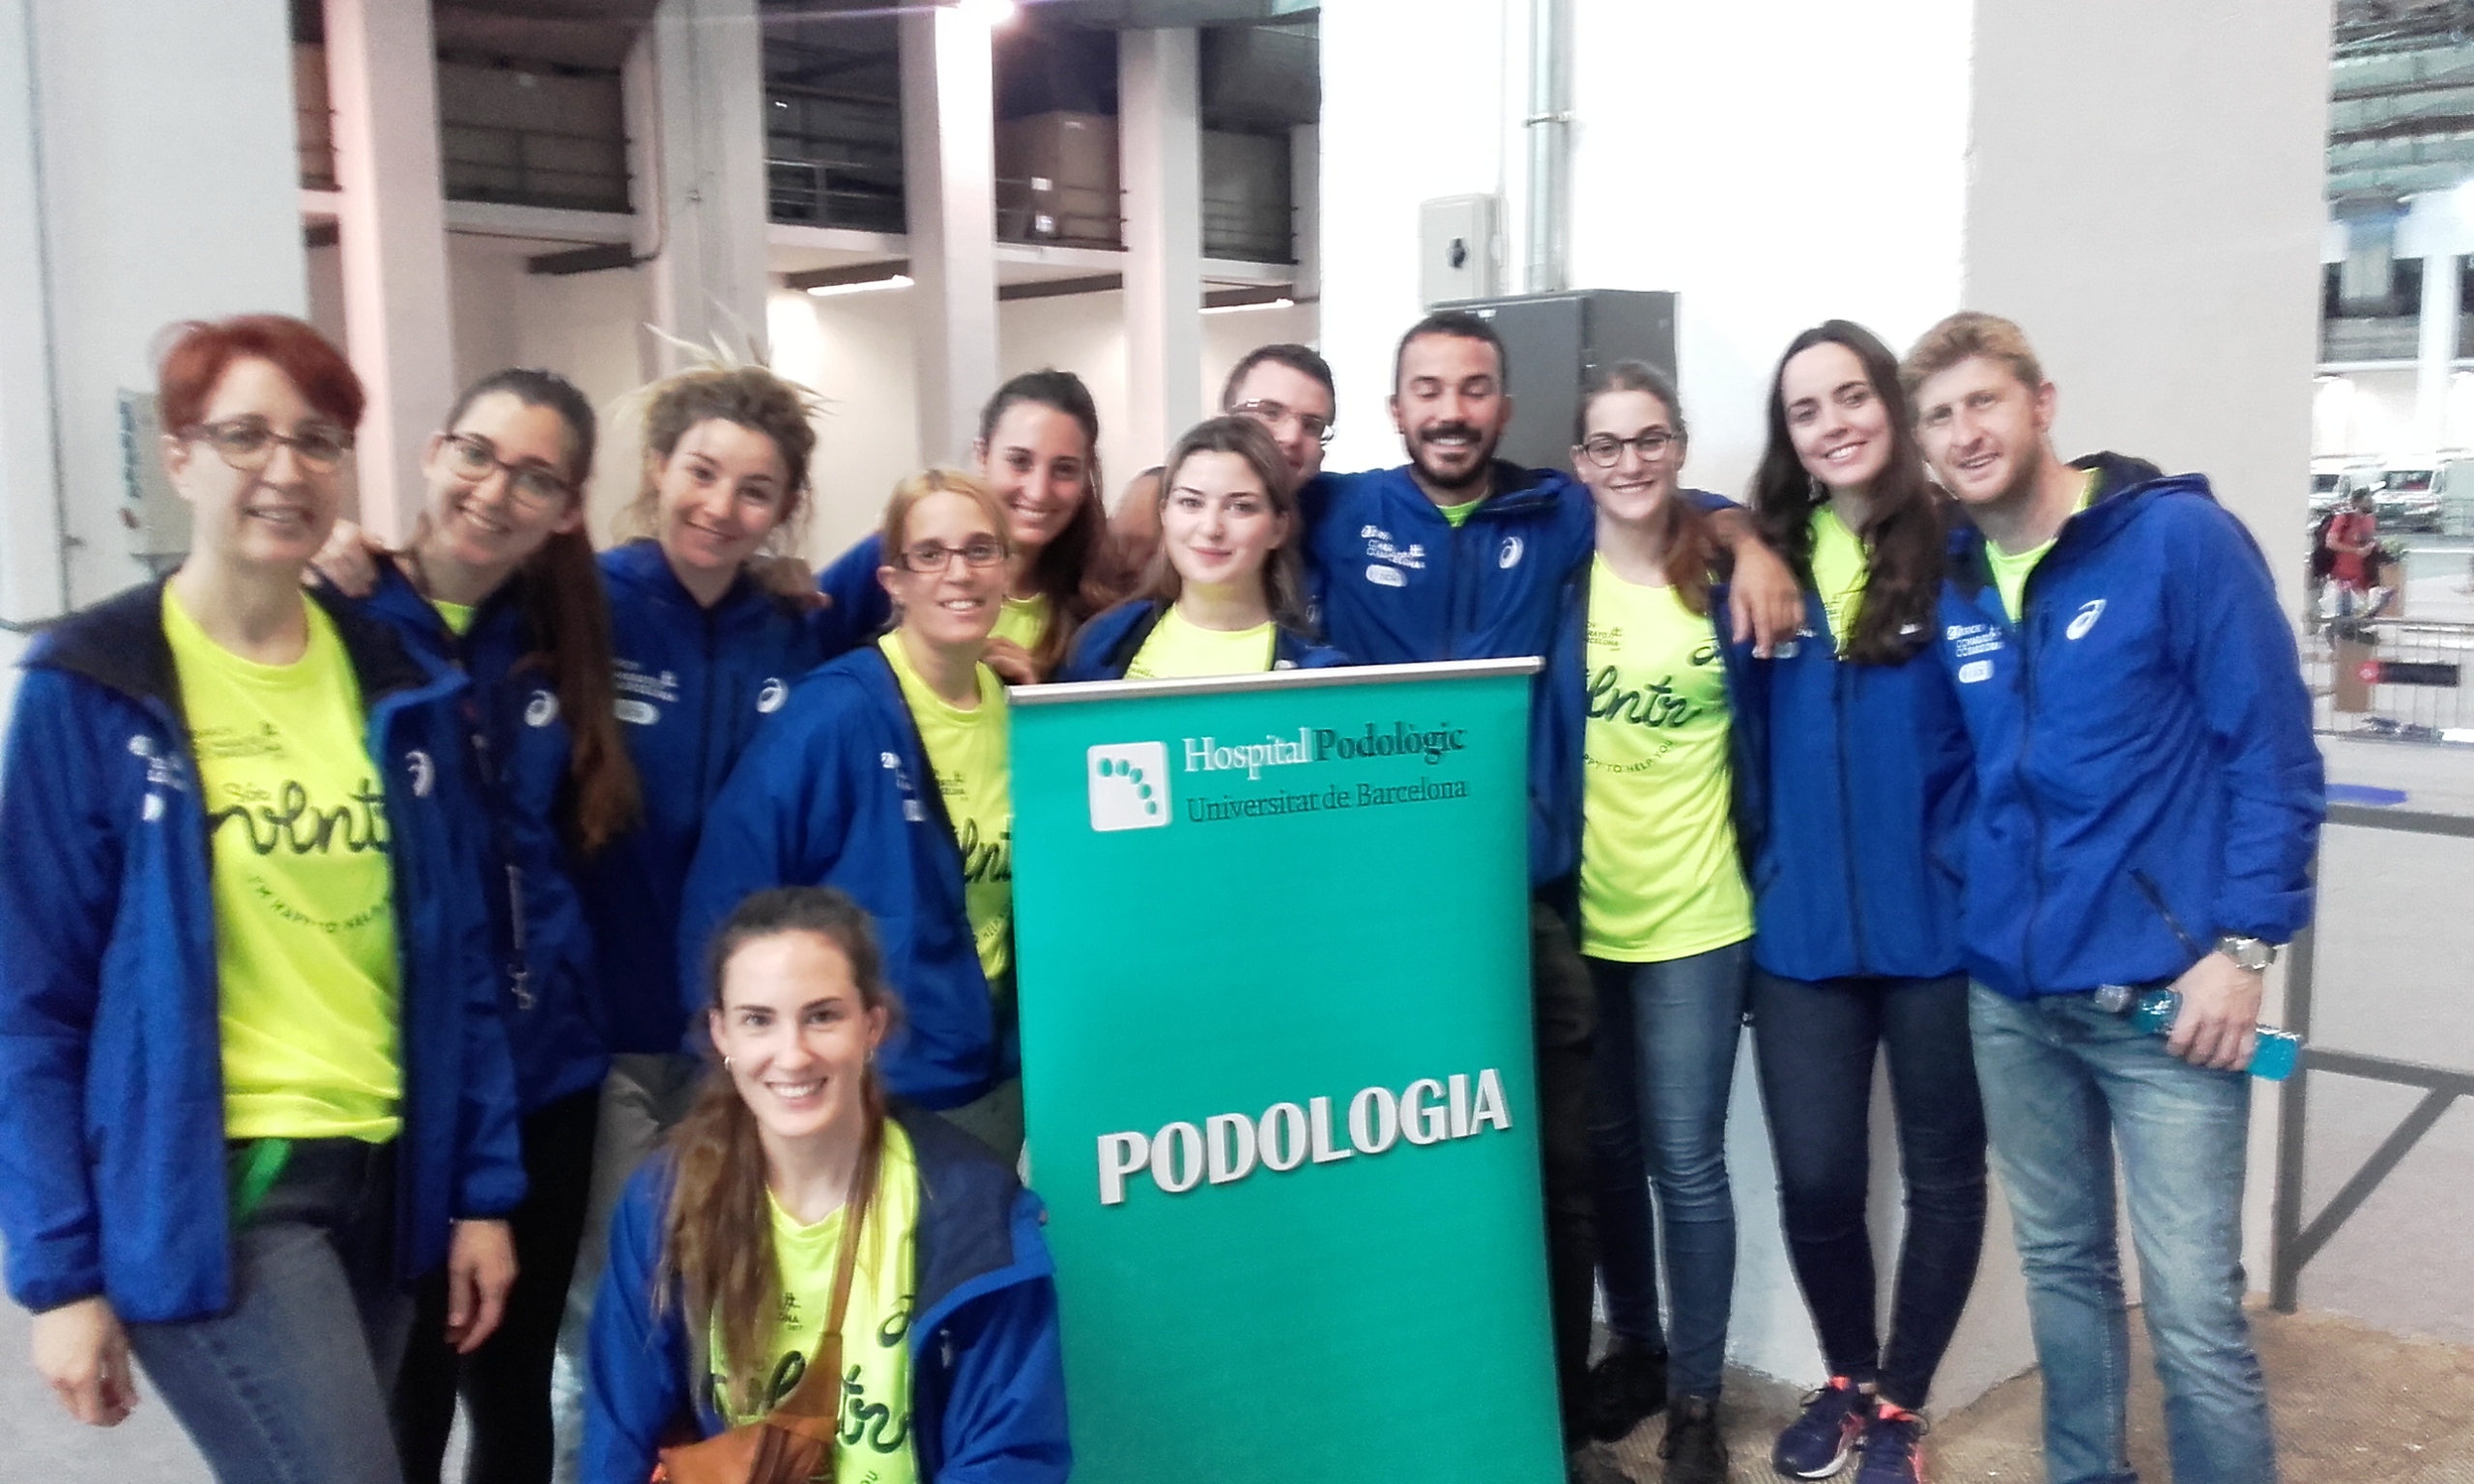 El Hospital Podológico Universidad de Barcelona colabora en la Zurich Marató de Barcelona